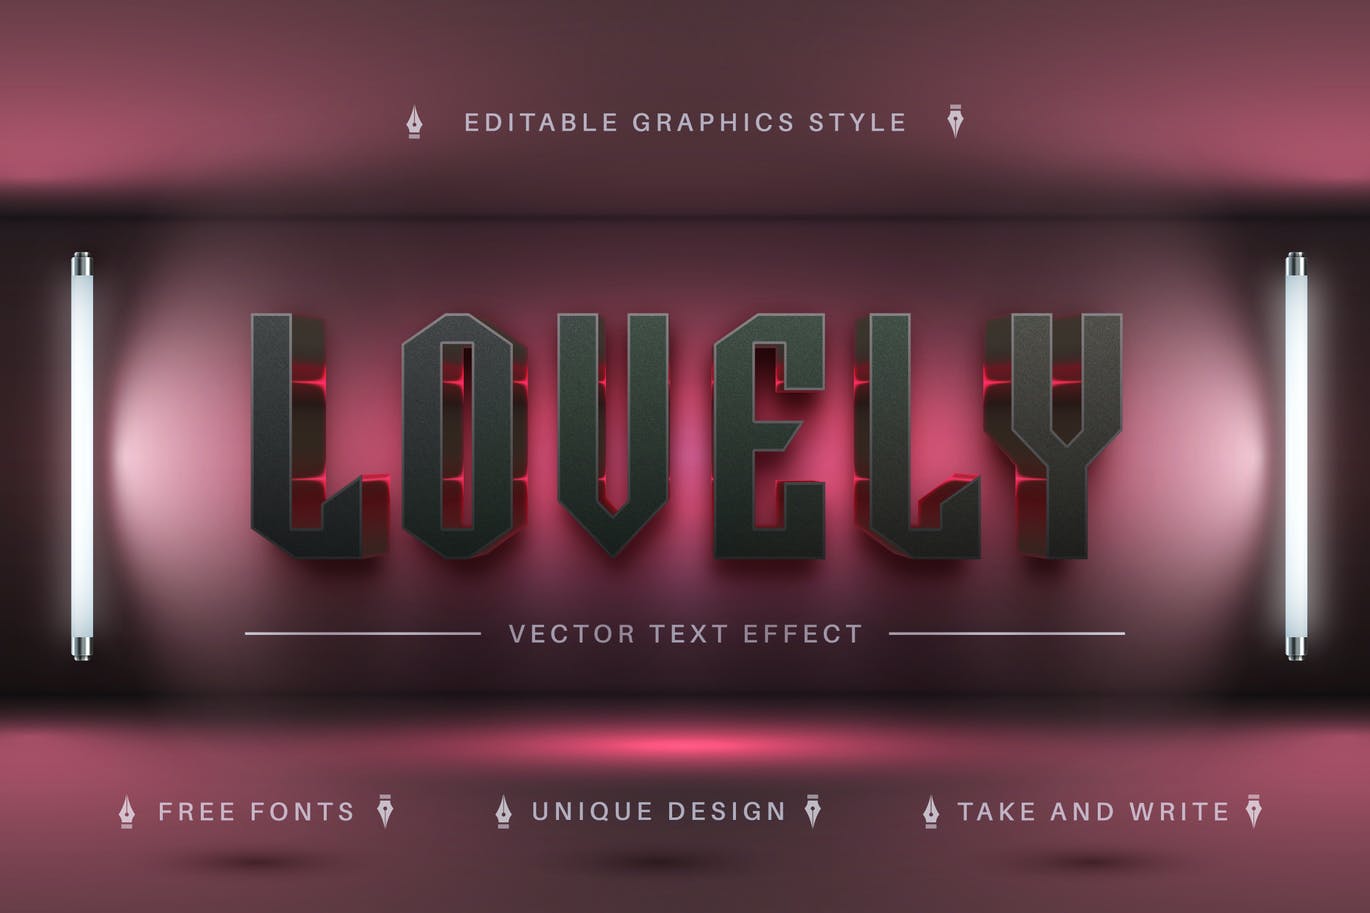 粉光金属感矢量文字效果字体样式 Pink Lovely – Editable Text Effect, Font Style 插件预设 第1张